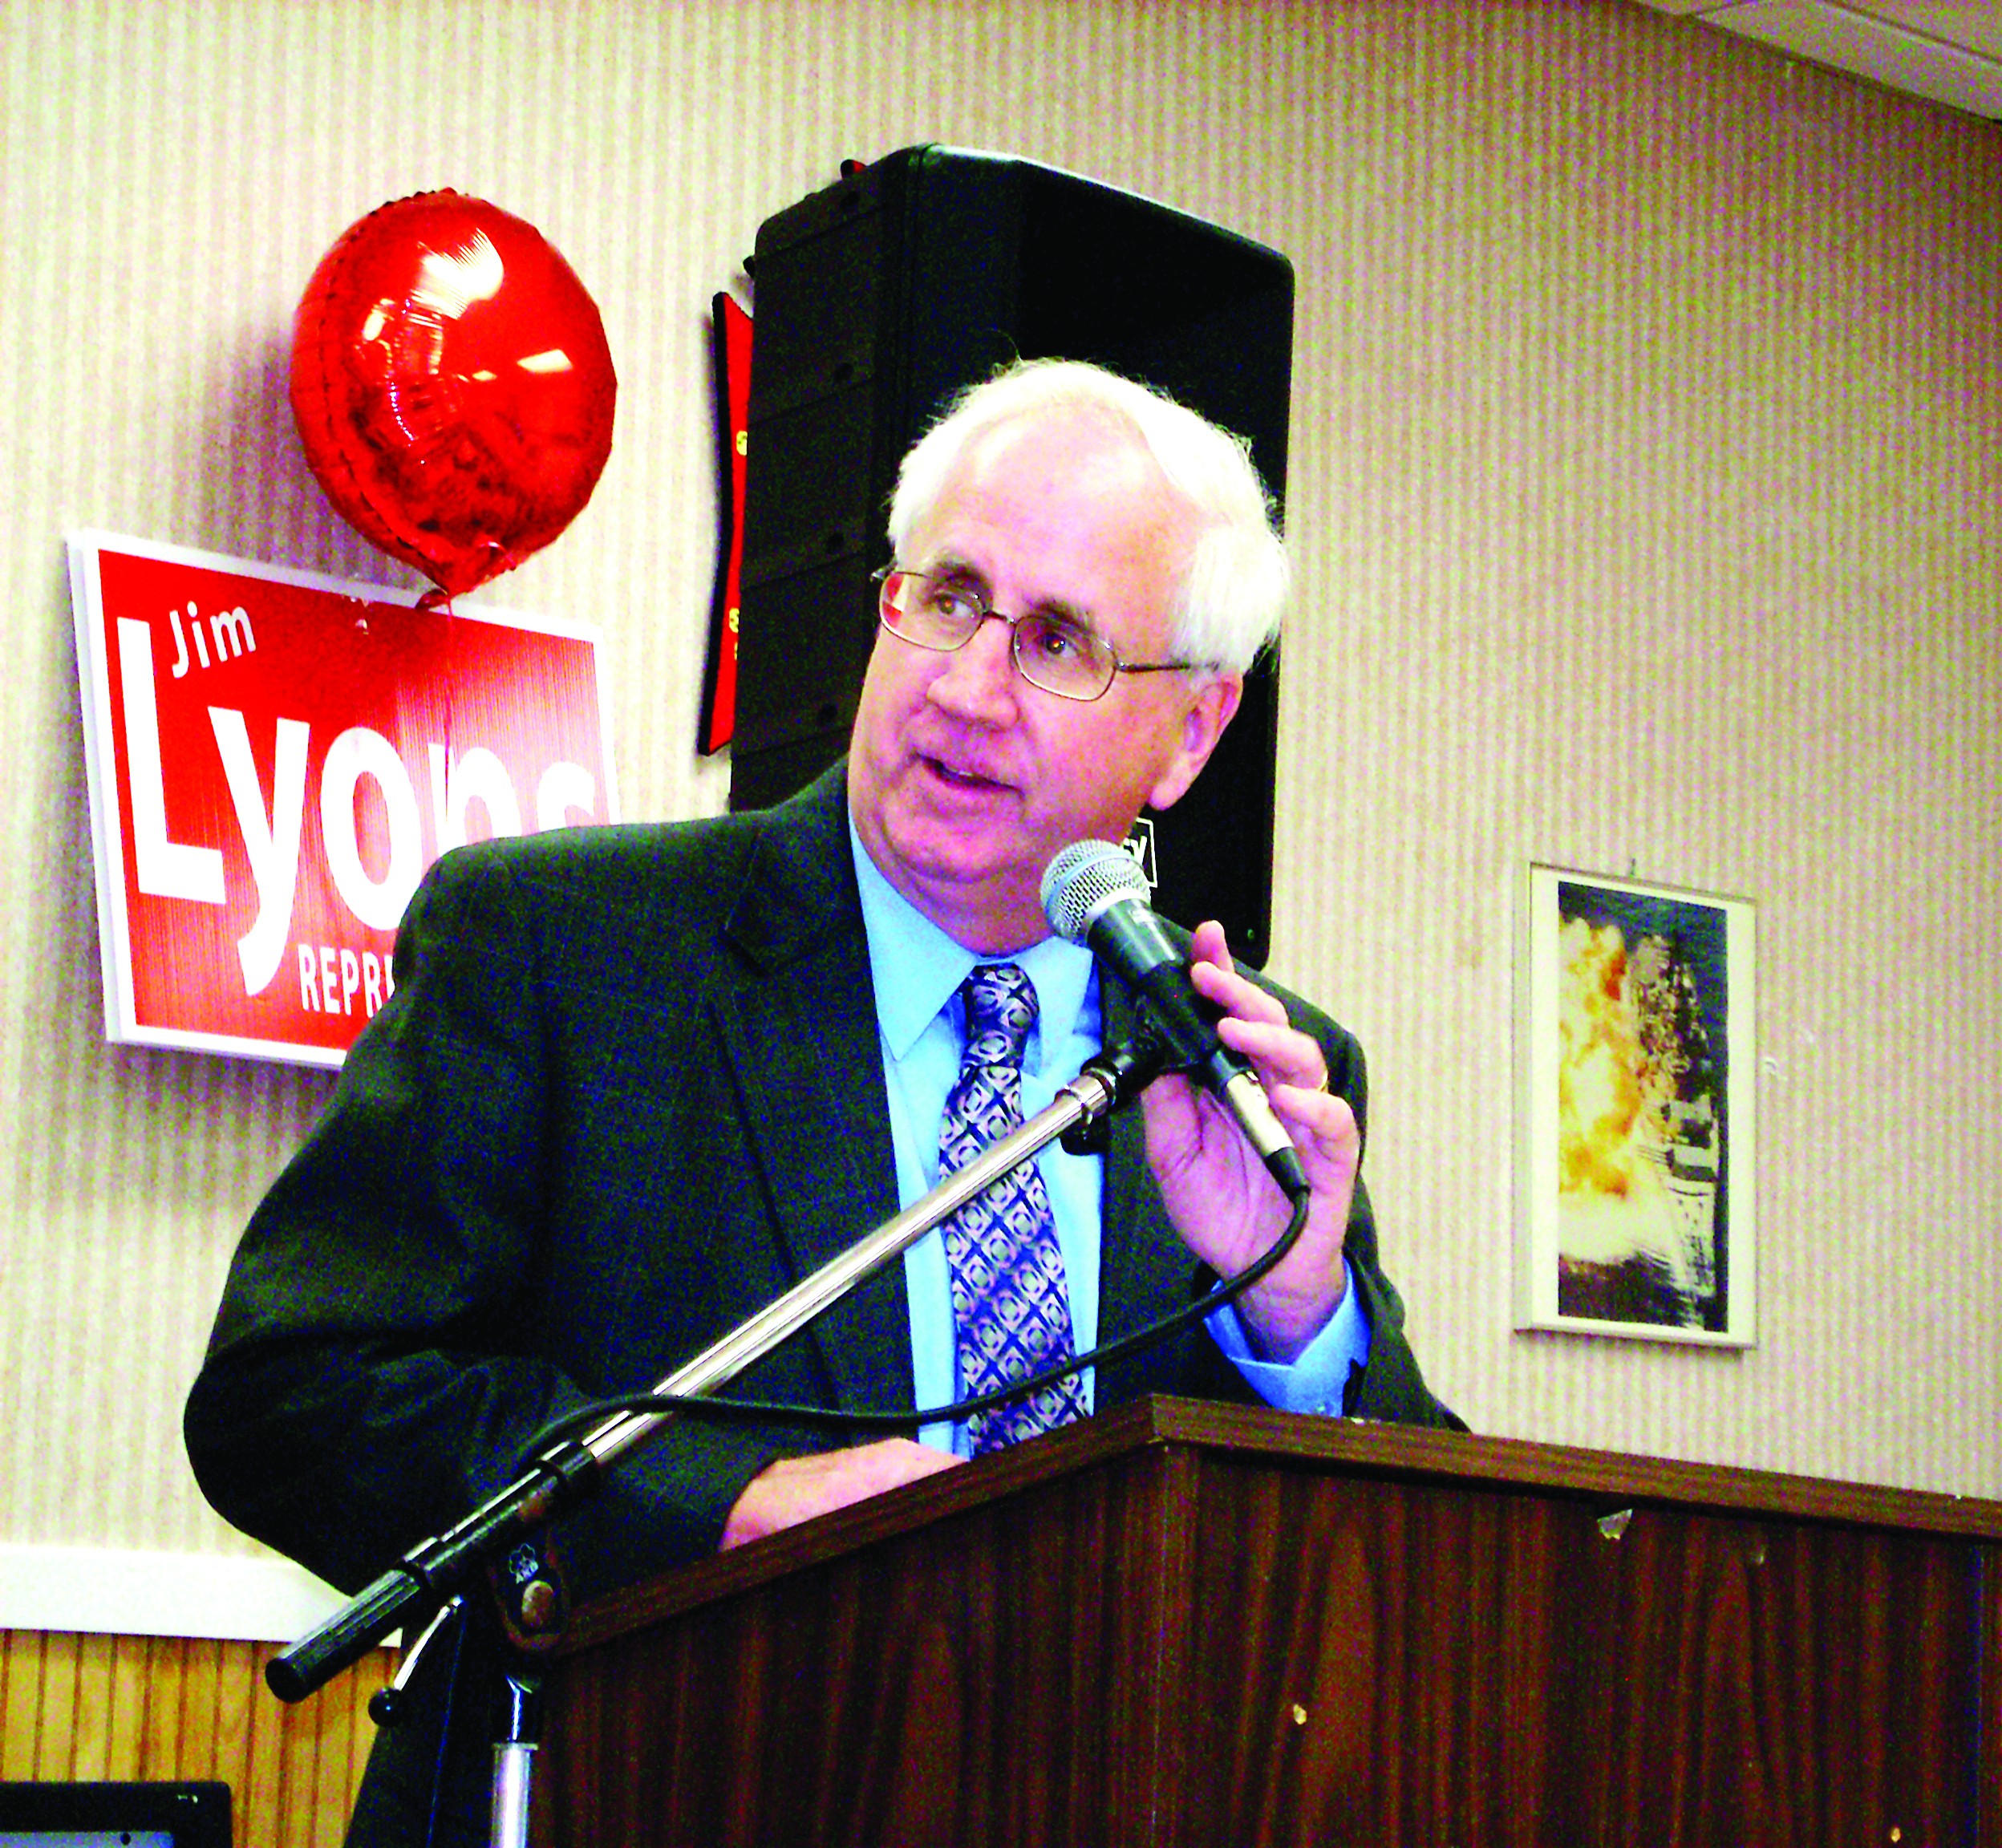 State Representative Jim Lyons